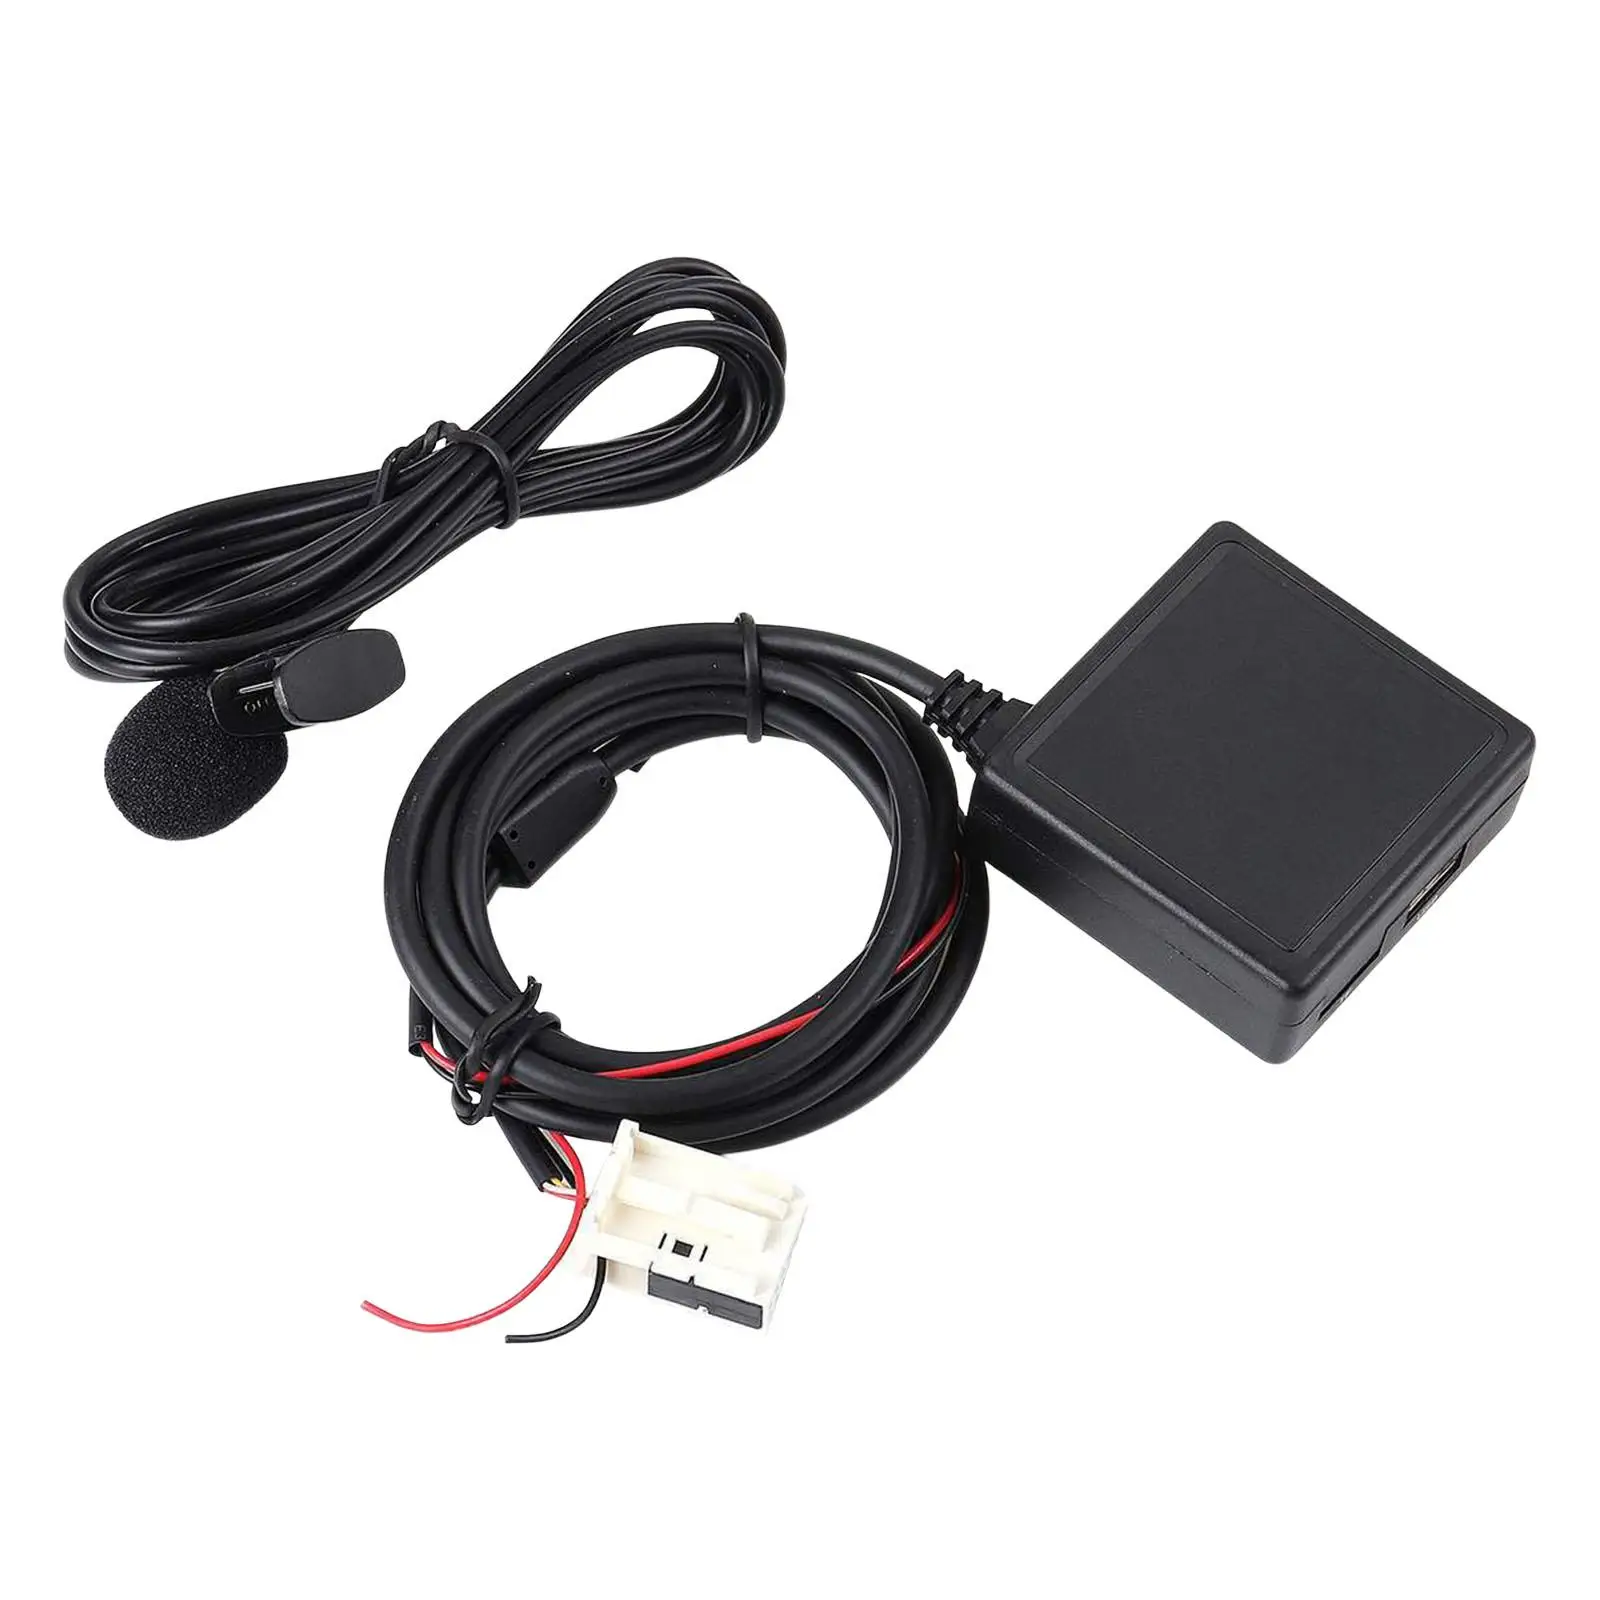 

Car AUX Adaptor Cable with Mic Support TF Card Auxiliary Input Adapters for E90 E91 E92 E81 E65 E90 E91